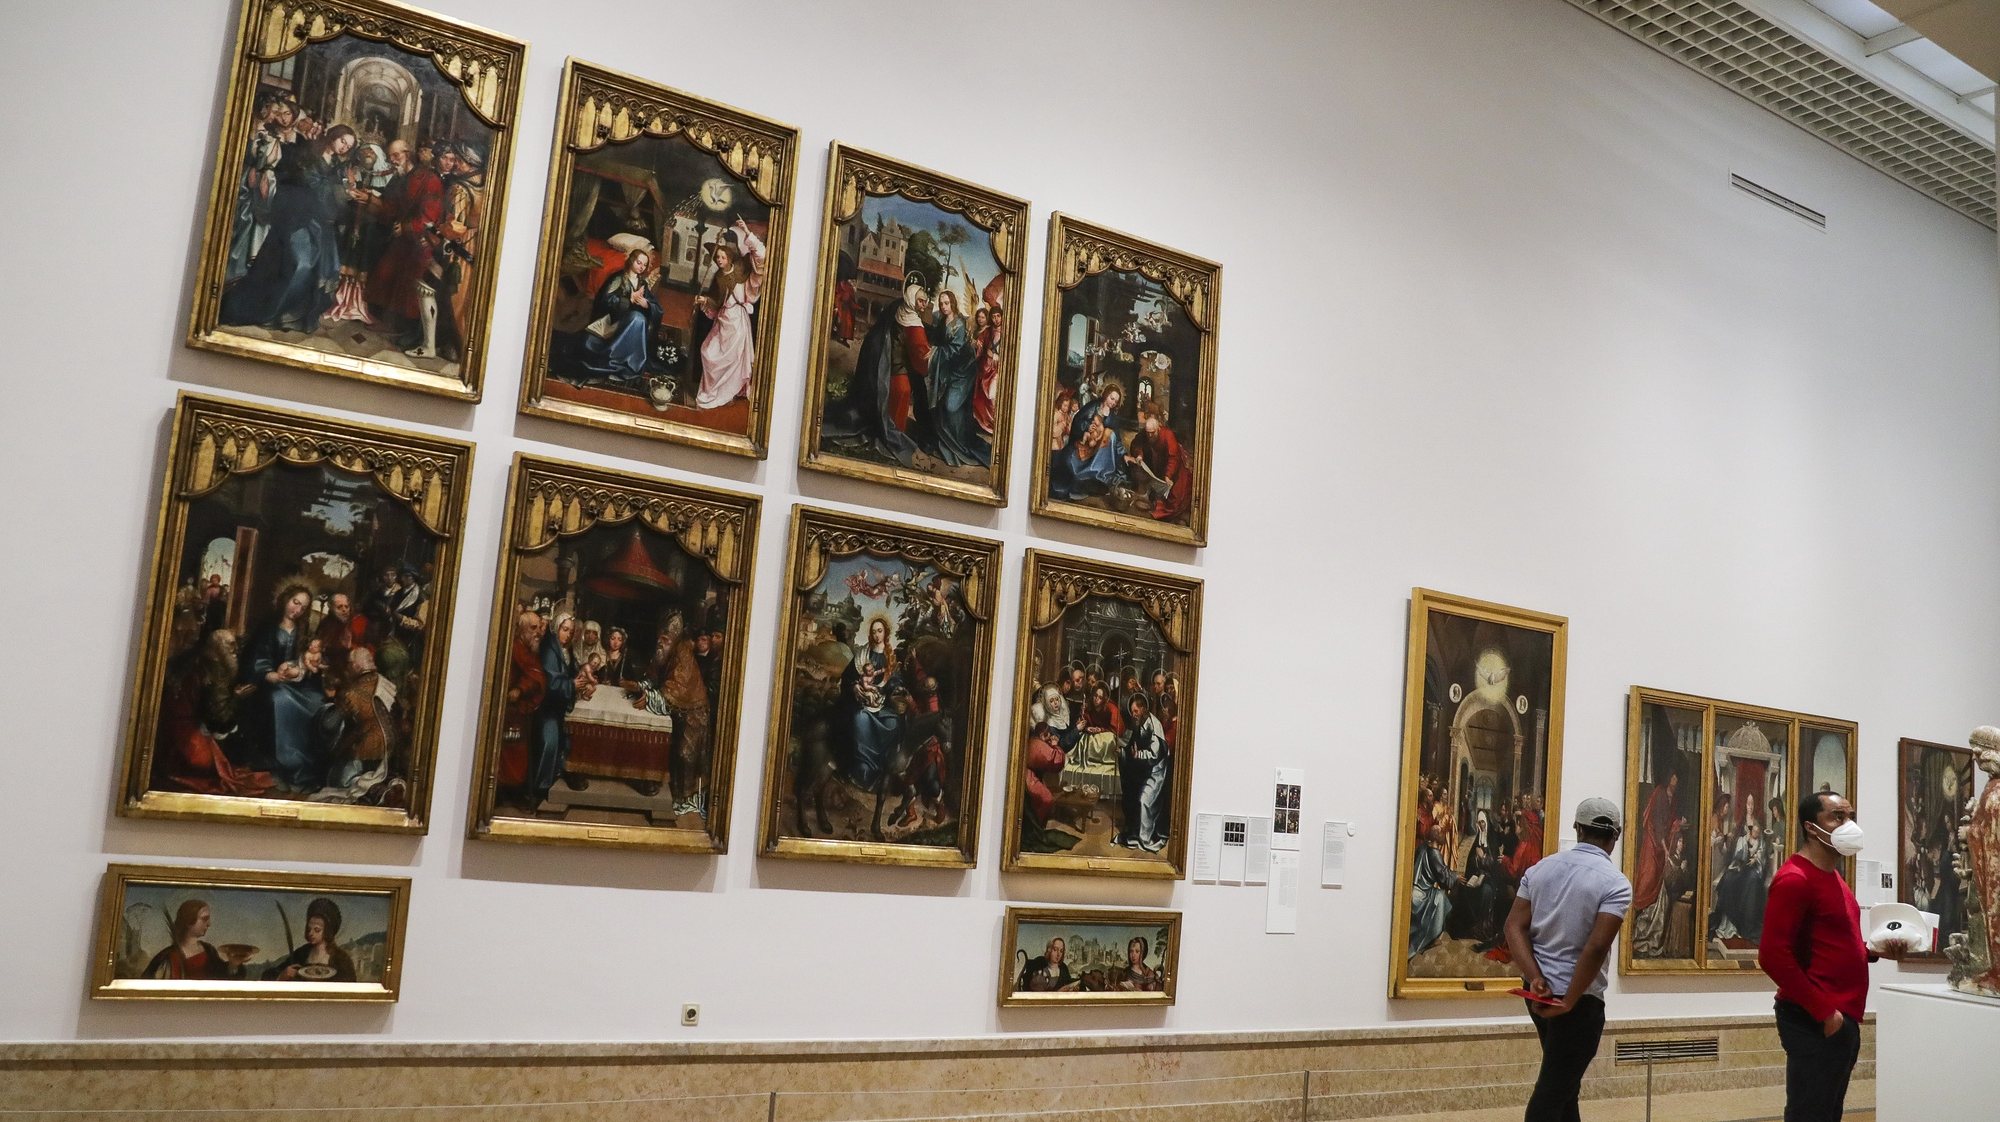 Visitantes admiram obras de arte expostas no Museu Nacional de Arte Antiga, no Dia Internacional dos Museus em Lisboa, 18 de maio de 2020. TIAGO PETINGA/LUSA